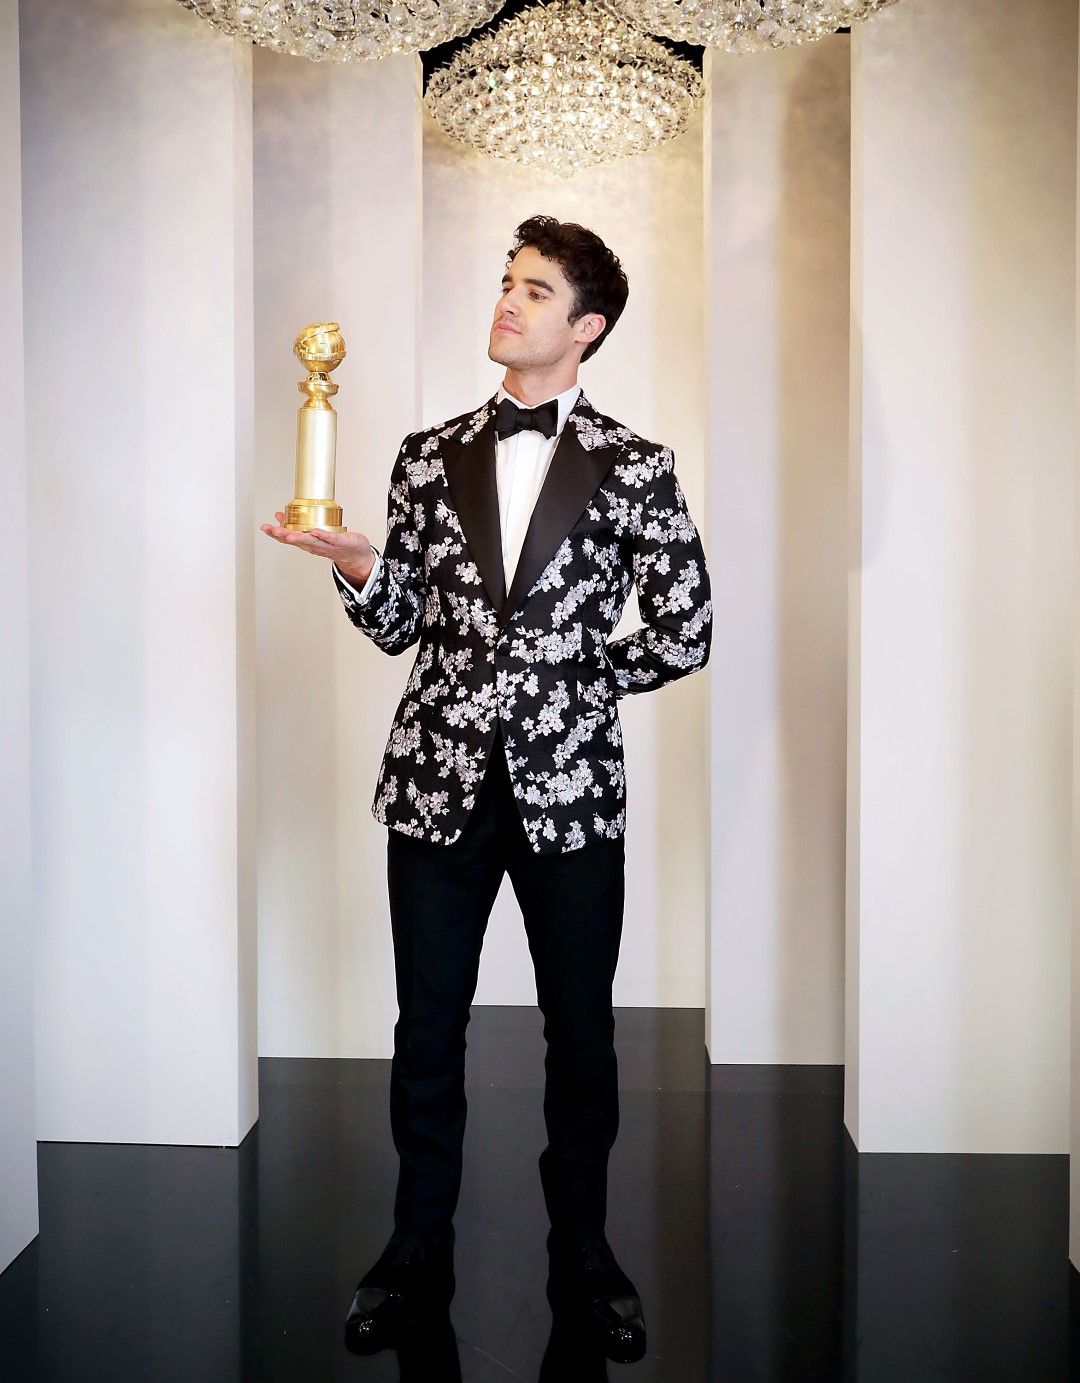 Дарън Крис с приза си за най-добър актьор от наградите "Златен глобус"за ролята си в минисериала "Смъртта на Джани Версаче" през януари в Бевърли Хилс, Калифорния